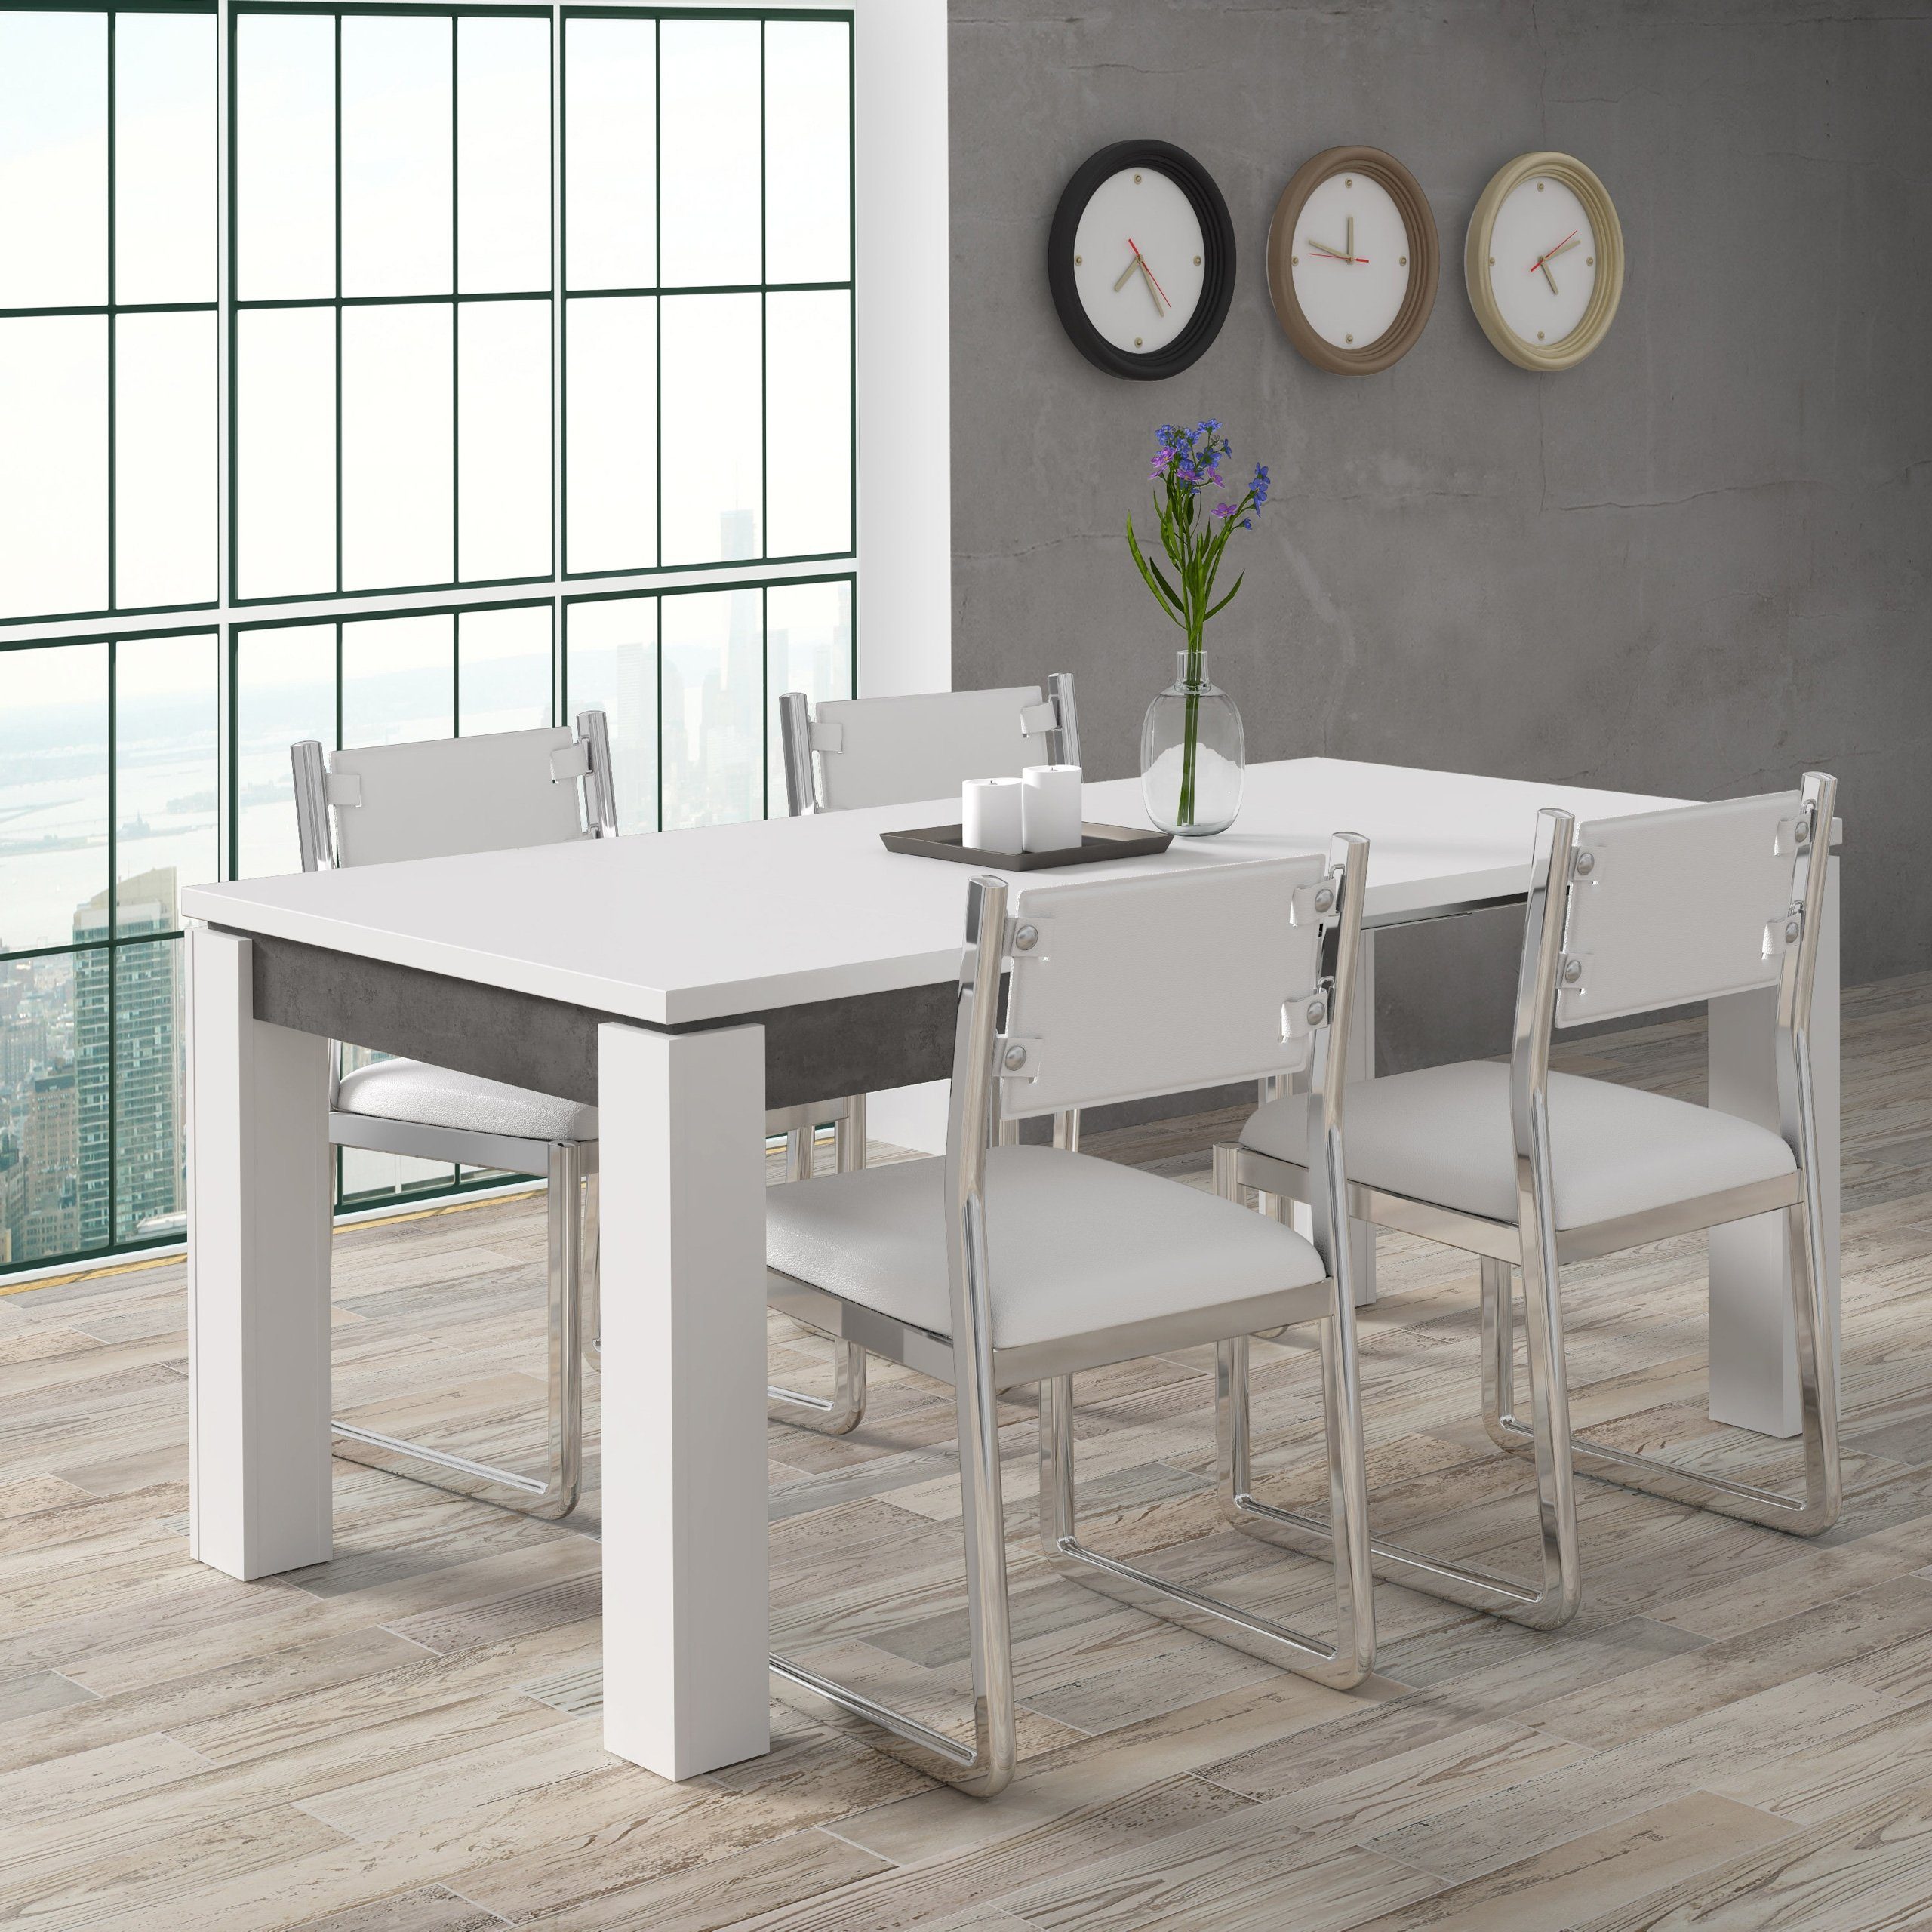 Newroom Esstisch Zanto, Esstisch Weiß Modern Ausziehbar und Betonoptik Esszimmer Tisch